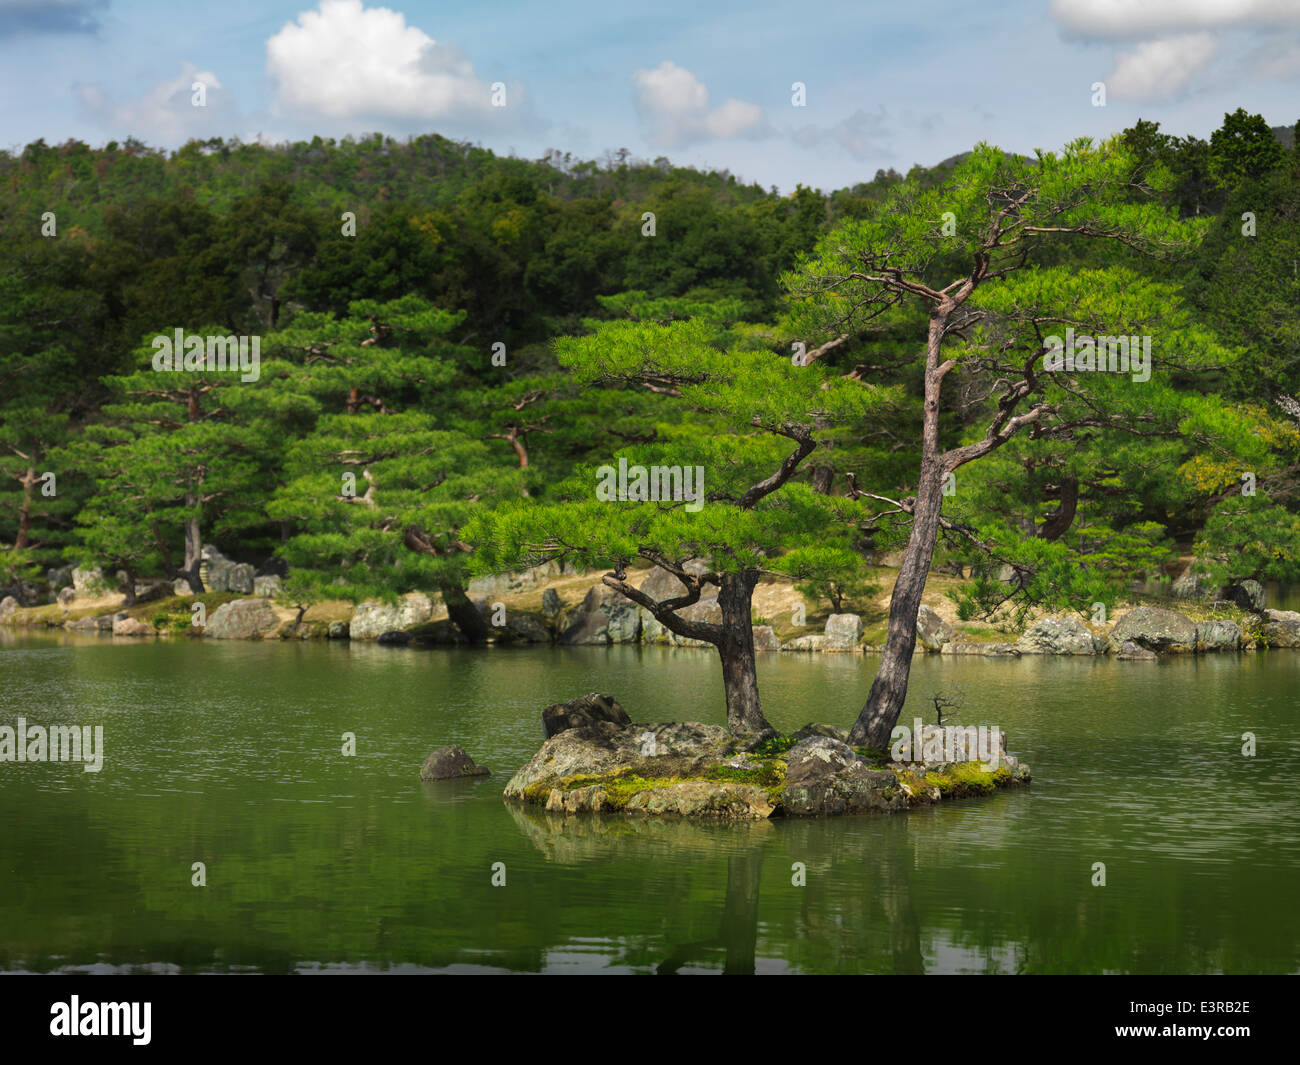 Licenza disponibile presso MaximImages.com alberi di pino nel giardino giapponese di Kyoto, Giappone Foto Stock